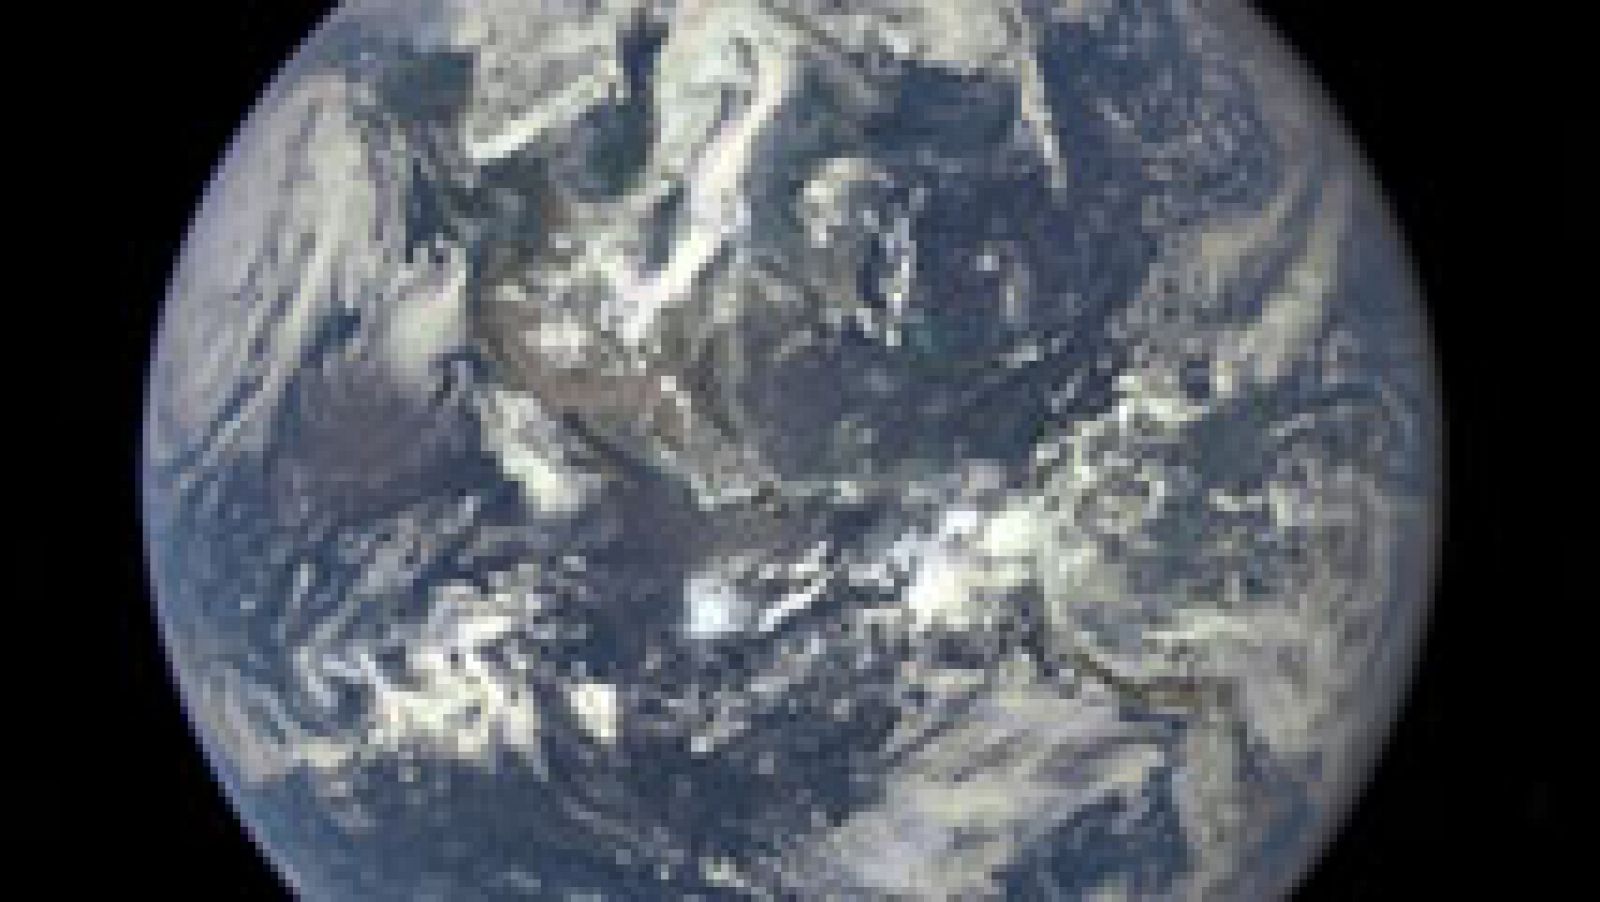 La Agencia Espacial Europea ha difundido nuevas imágenes de la Tierra captadas por su satélite Sentinel